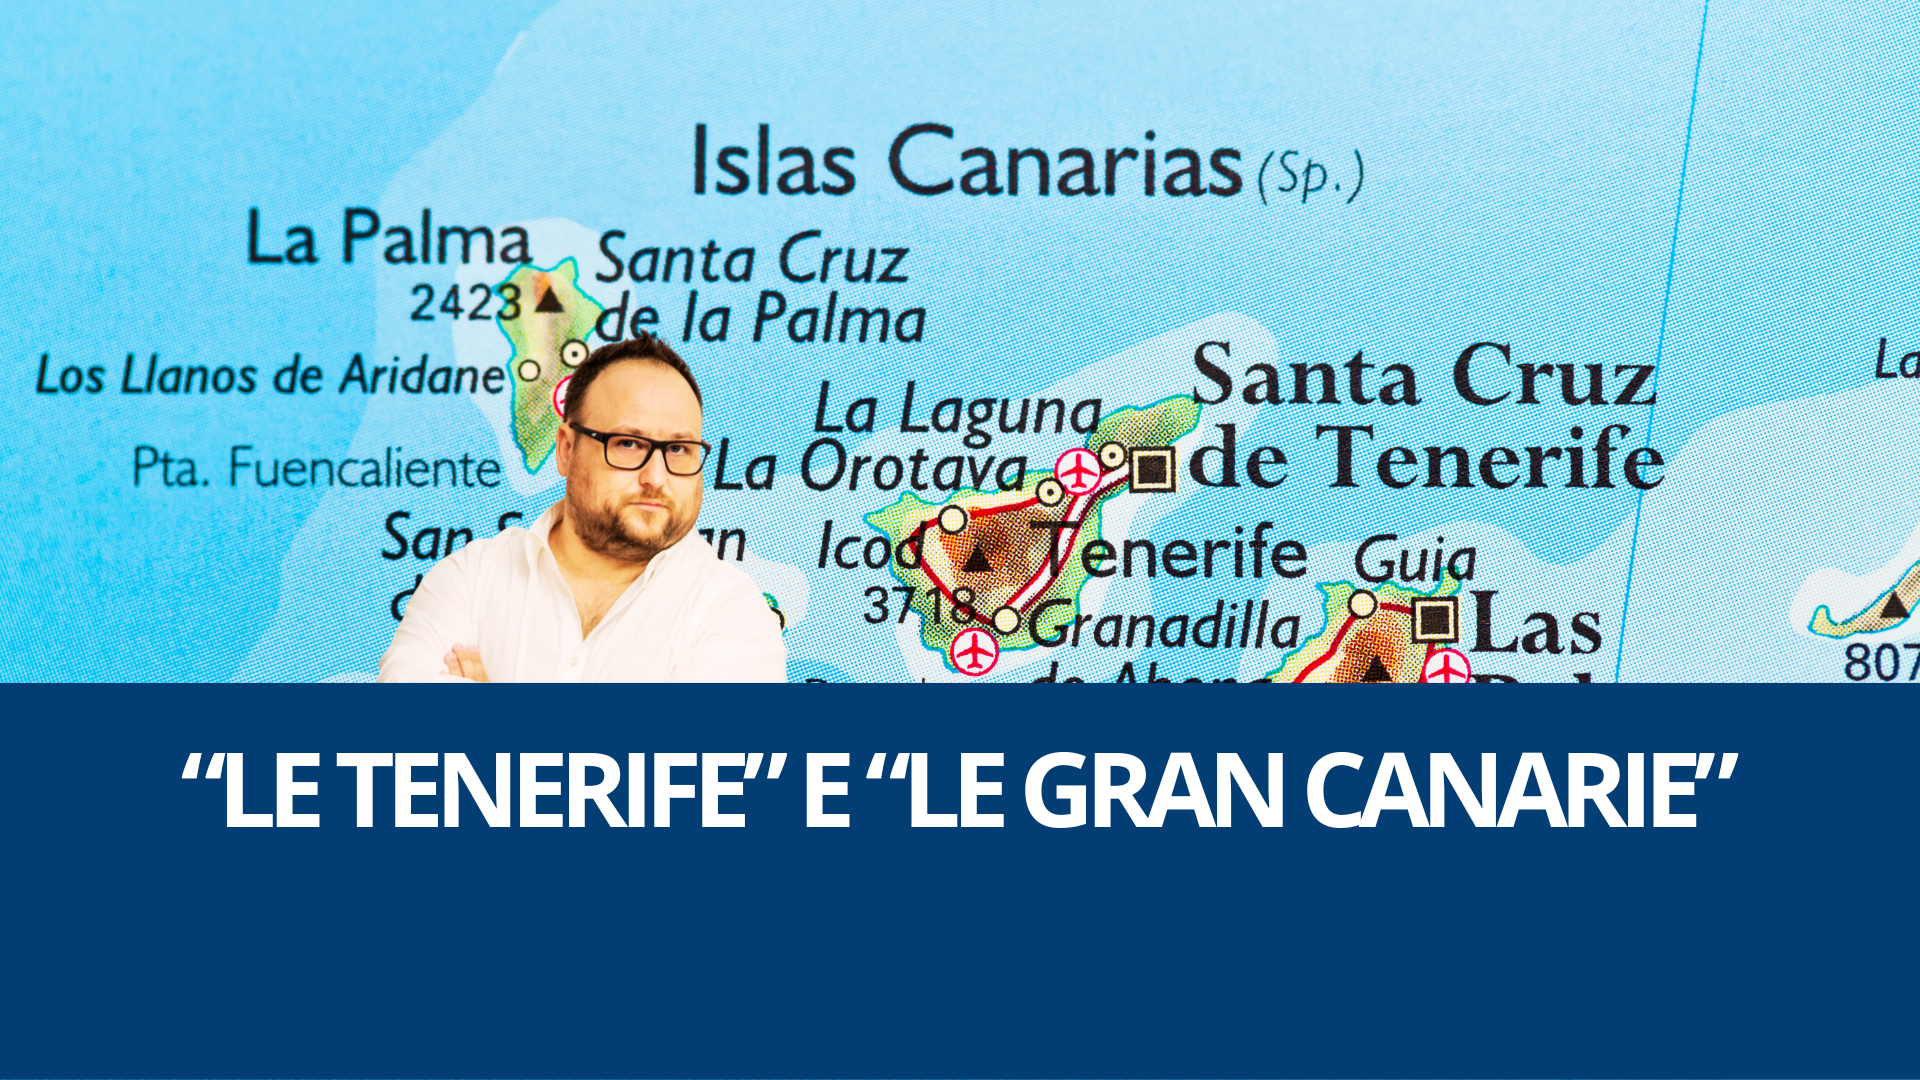 Vado “alle Tenerife” o “alle Gran Canarie”: spazziamo via la confusione.